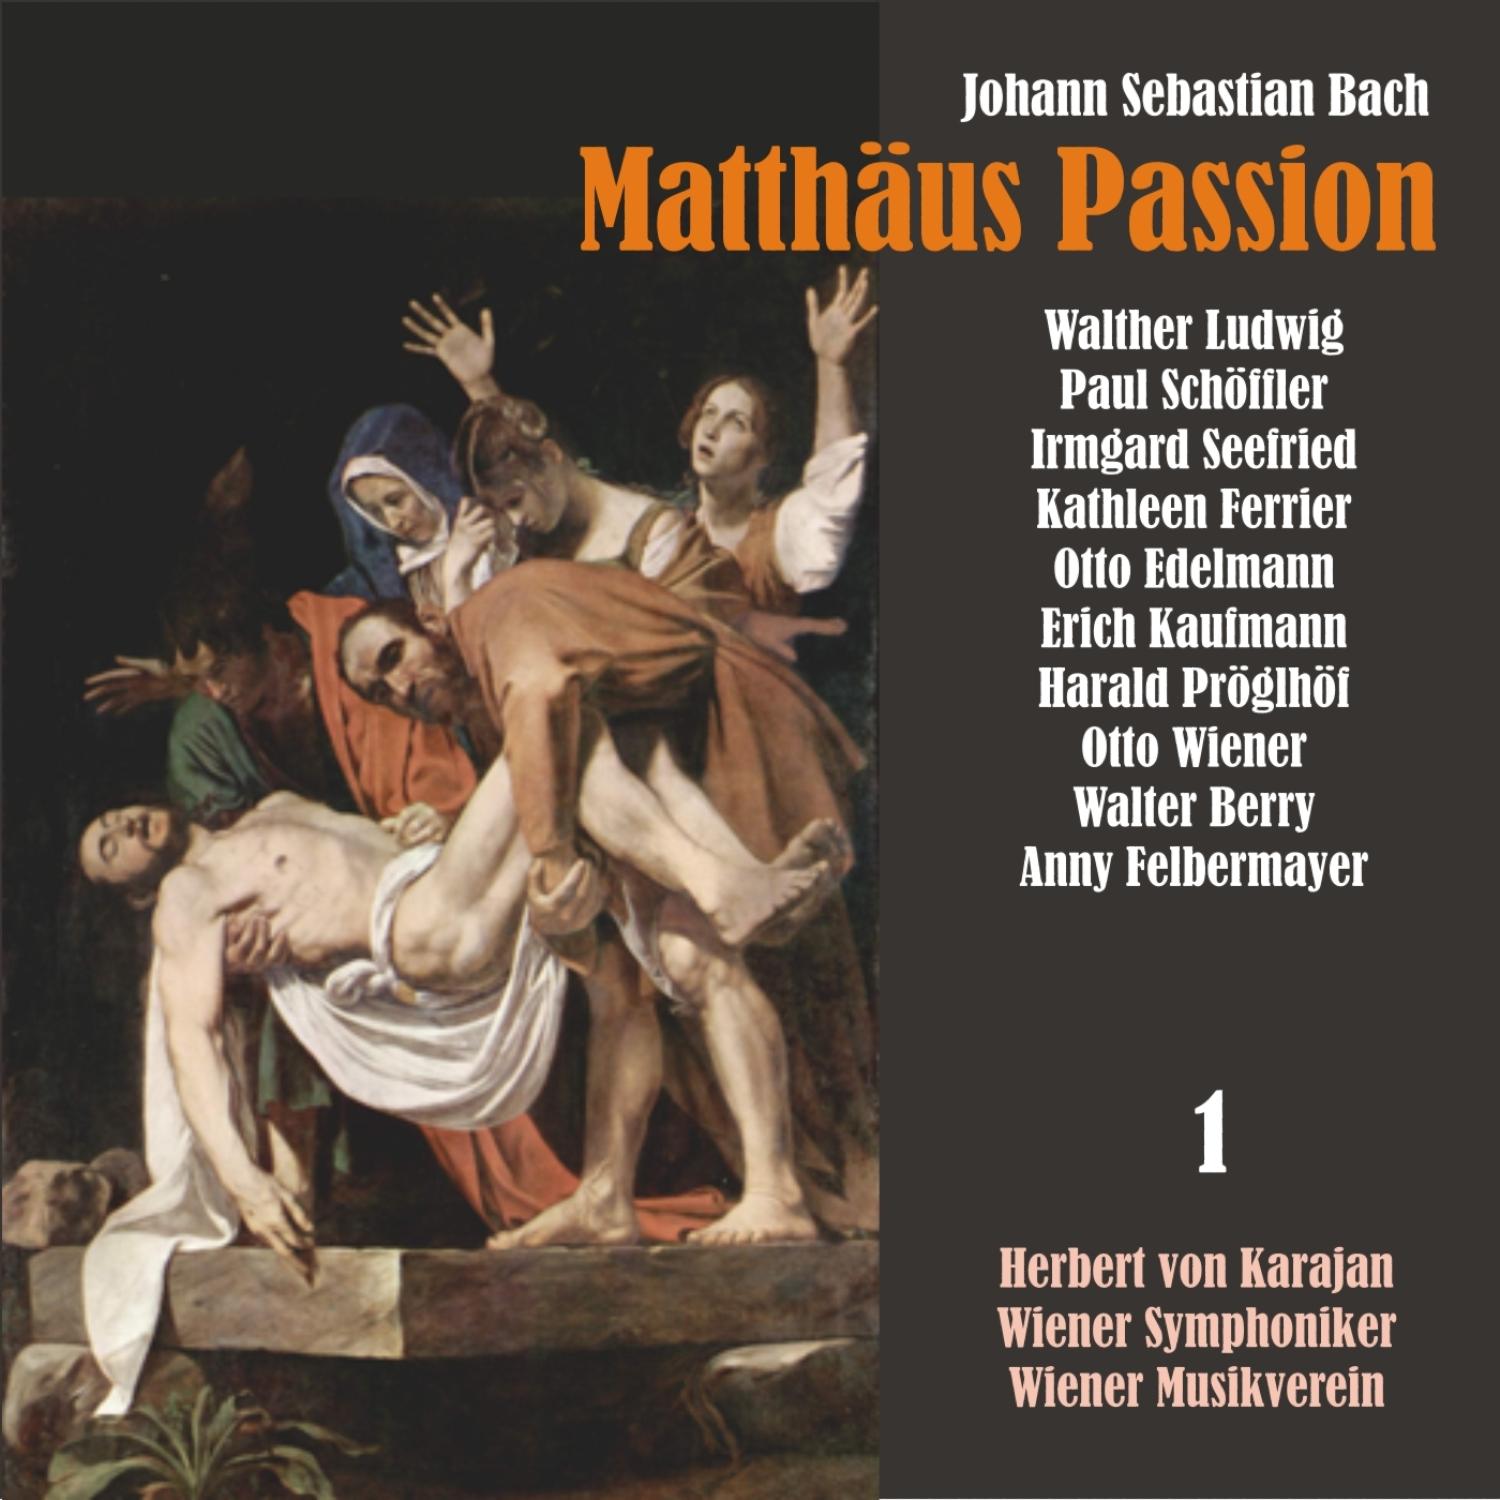 Matthäus Passion, BWV 244: "Und ging hin emn wenig"